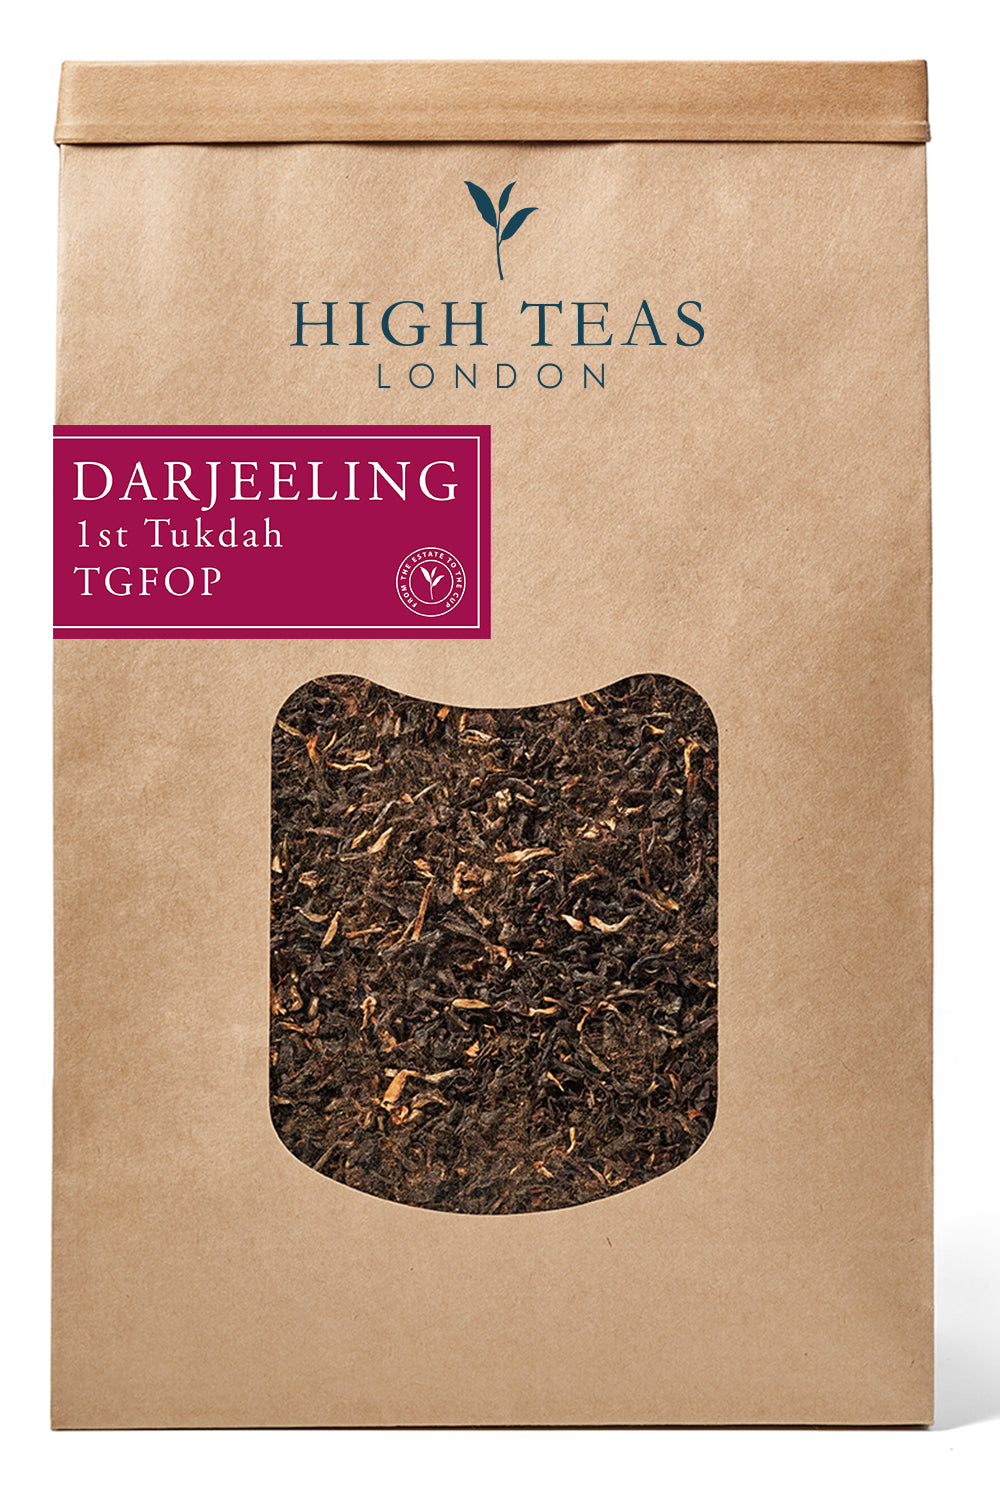 Darjeeling 1st Tukdah TGFOP-500g-Loose Leaf Tea-High Teas